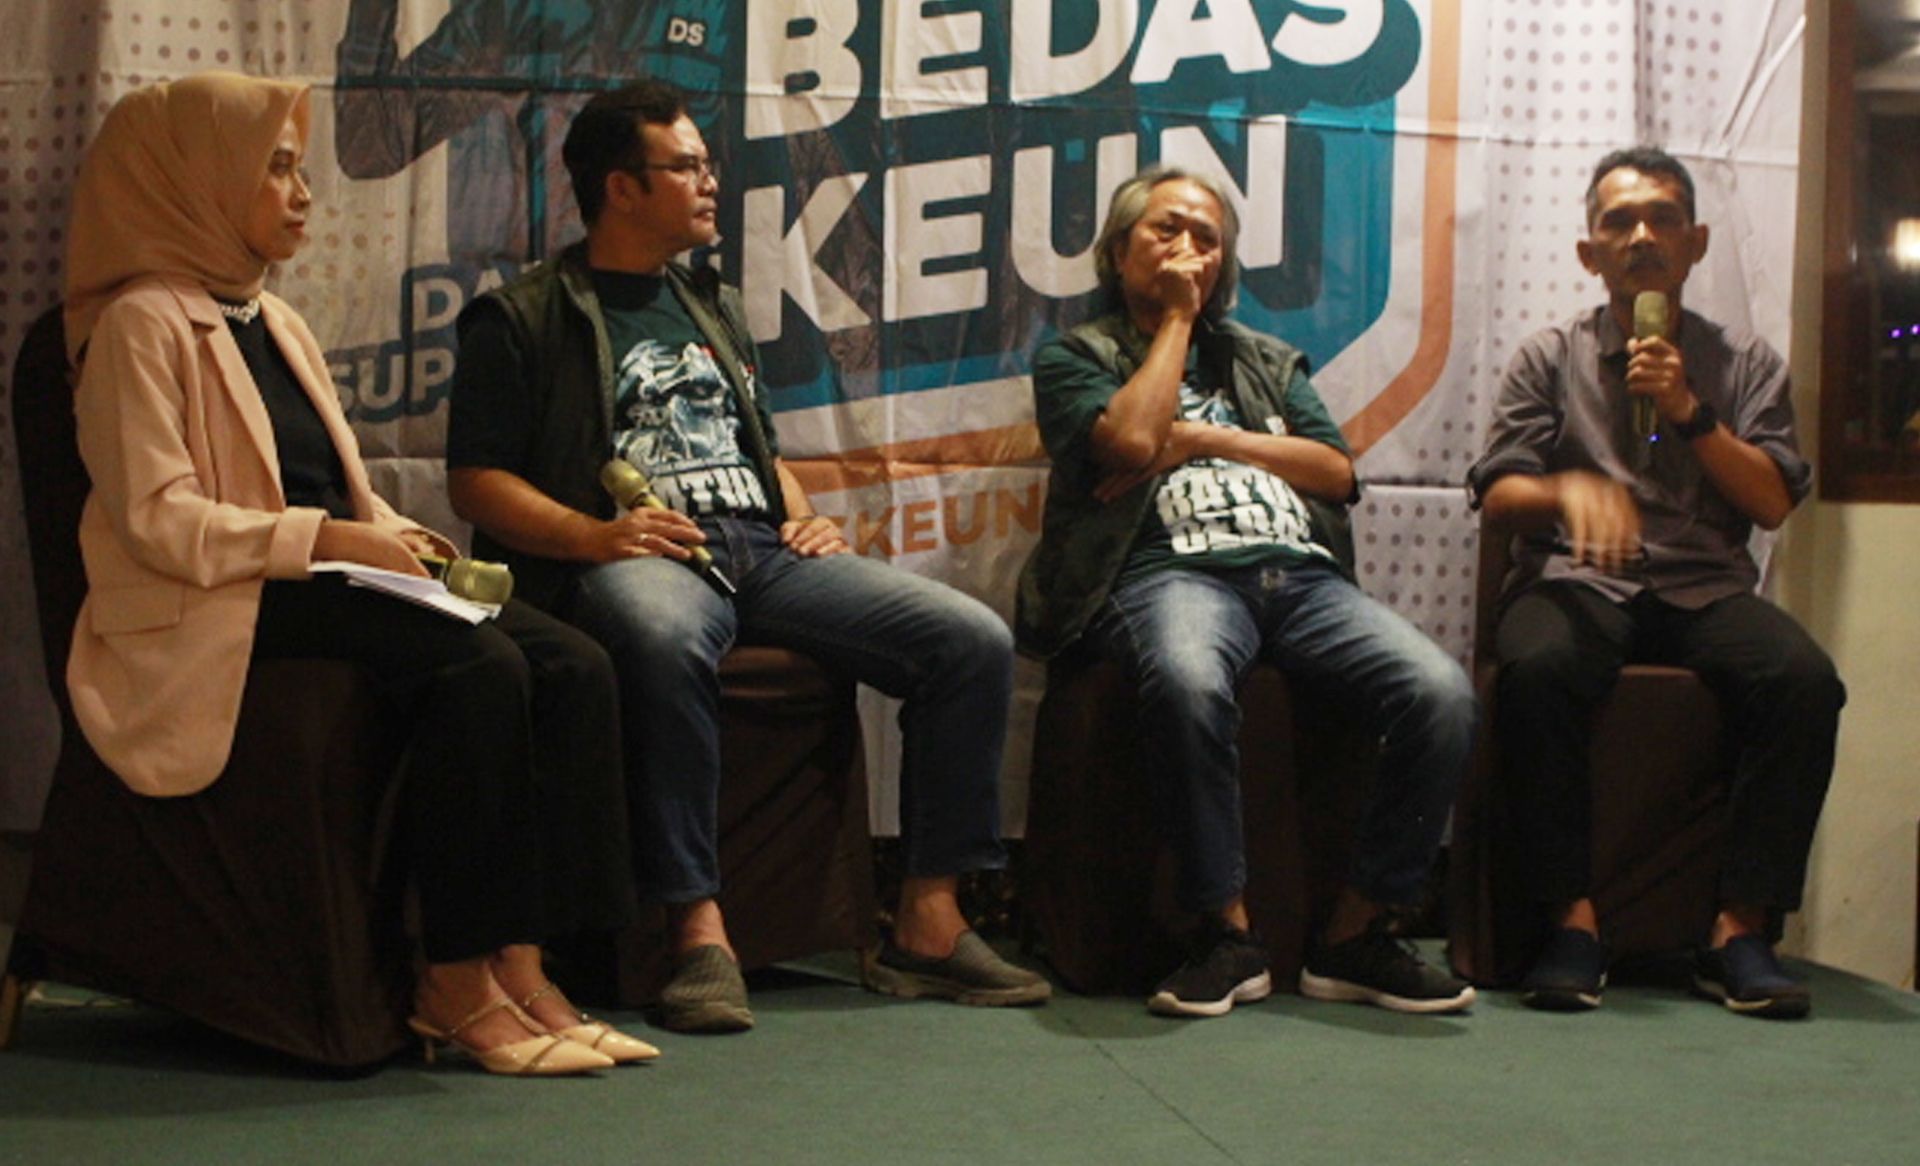 Diskusi Ngabedaskeun antara wartawan di Kabupaten Bandung dengan akademisi dari UIN Bandung Enjang Muhaimin di acara Batur Bedas.